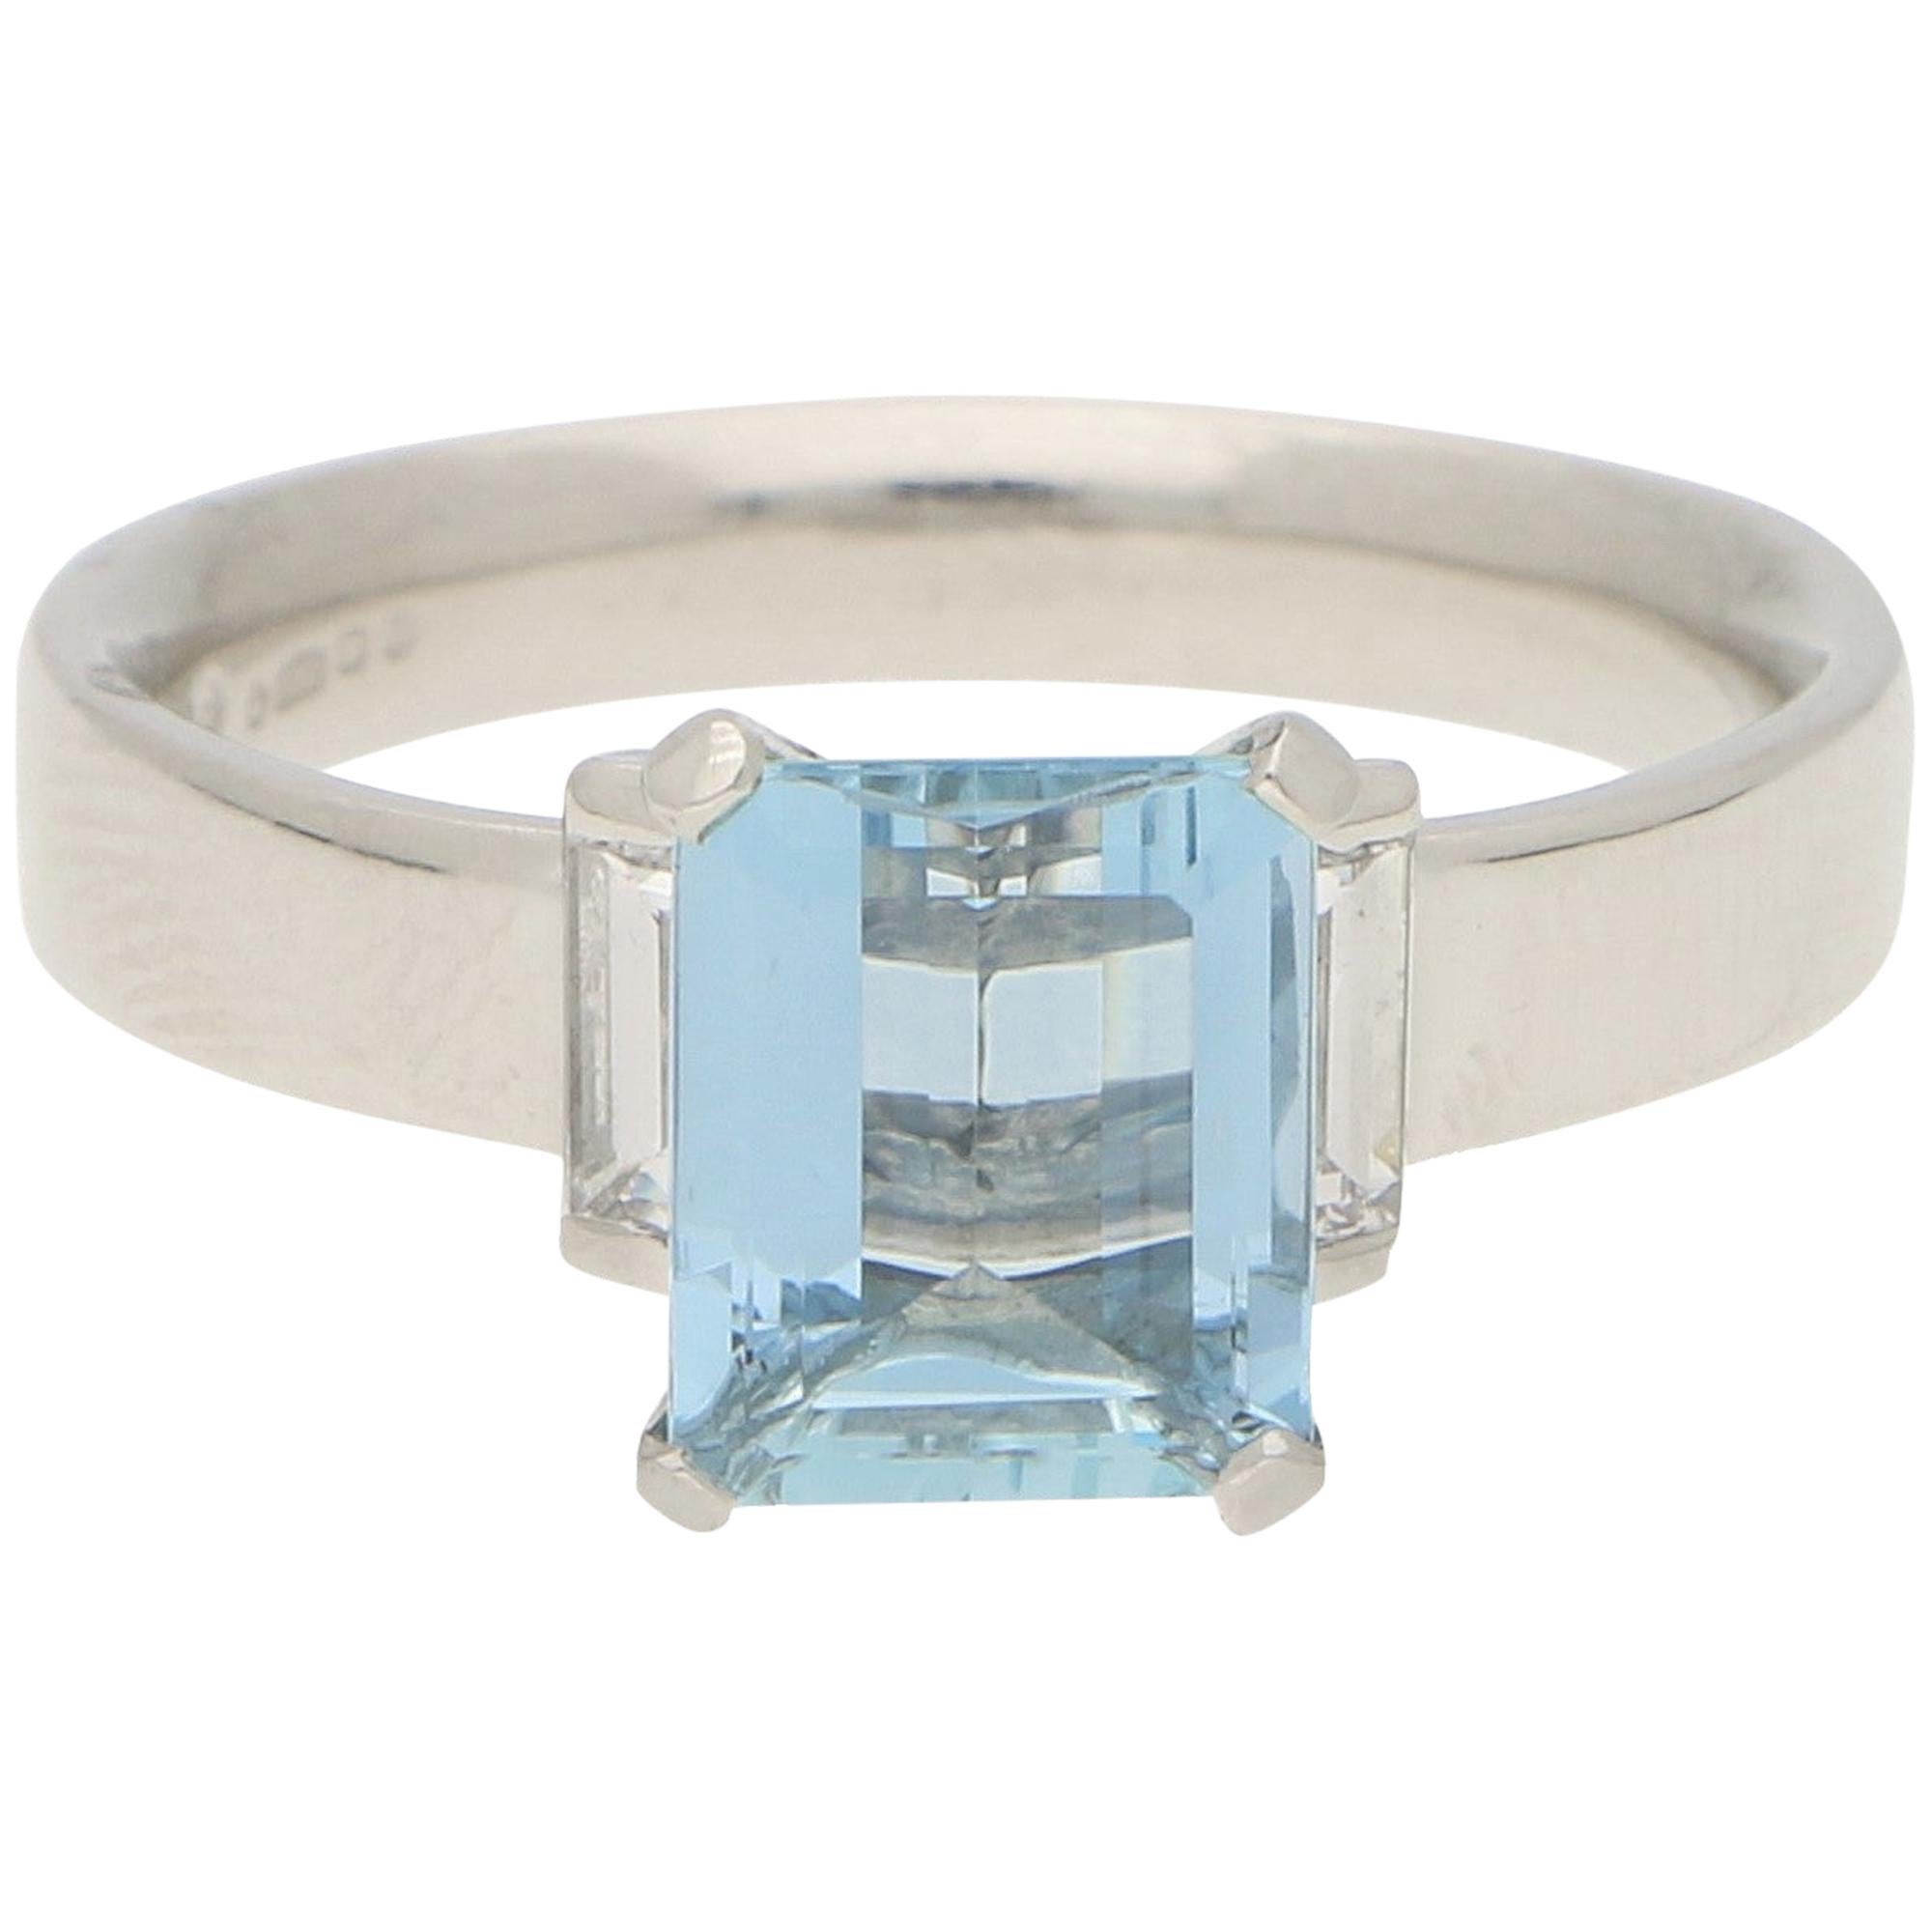 Aquamarine and Diamond Engagement/Cocktail Ring Set in Platinum